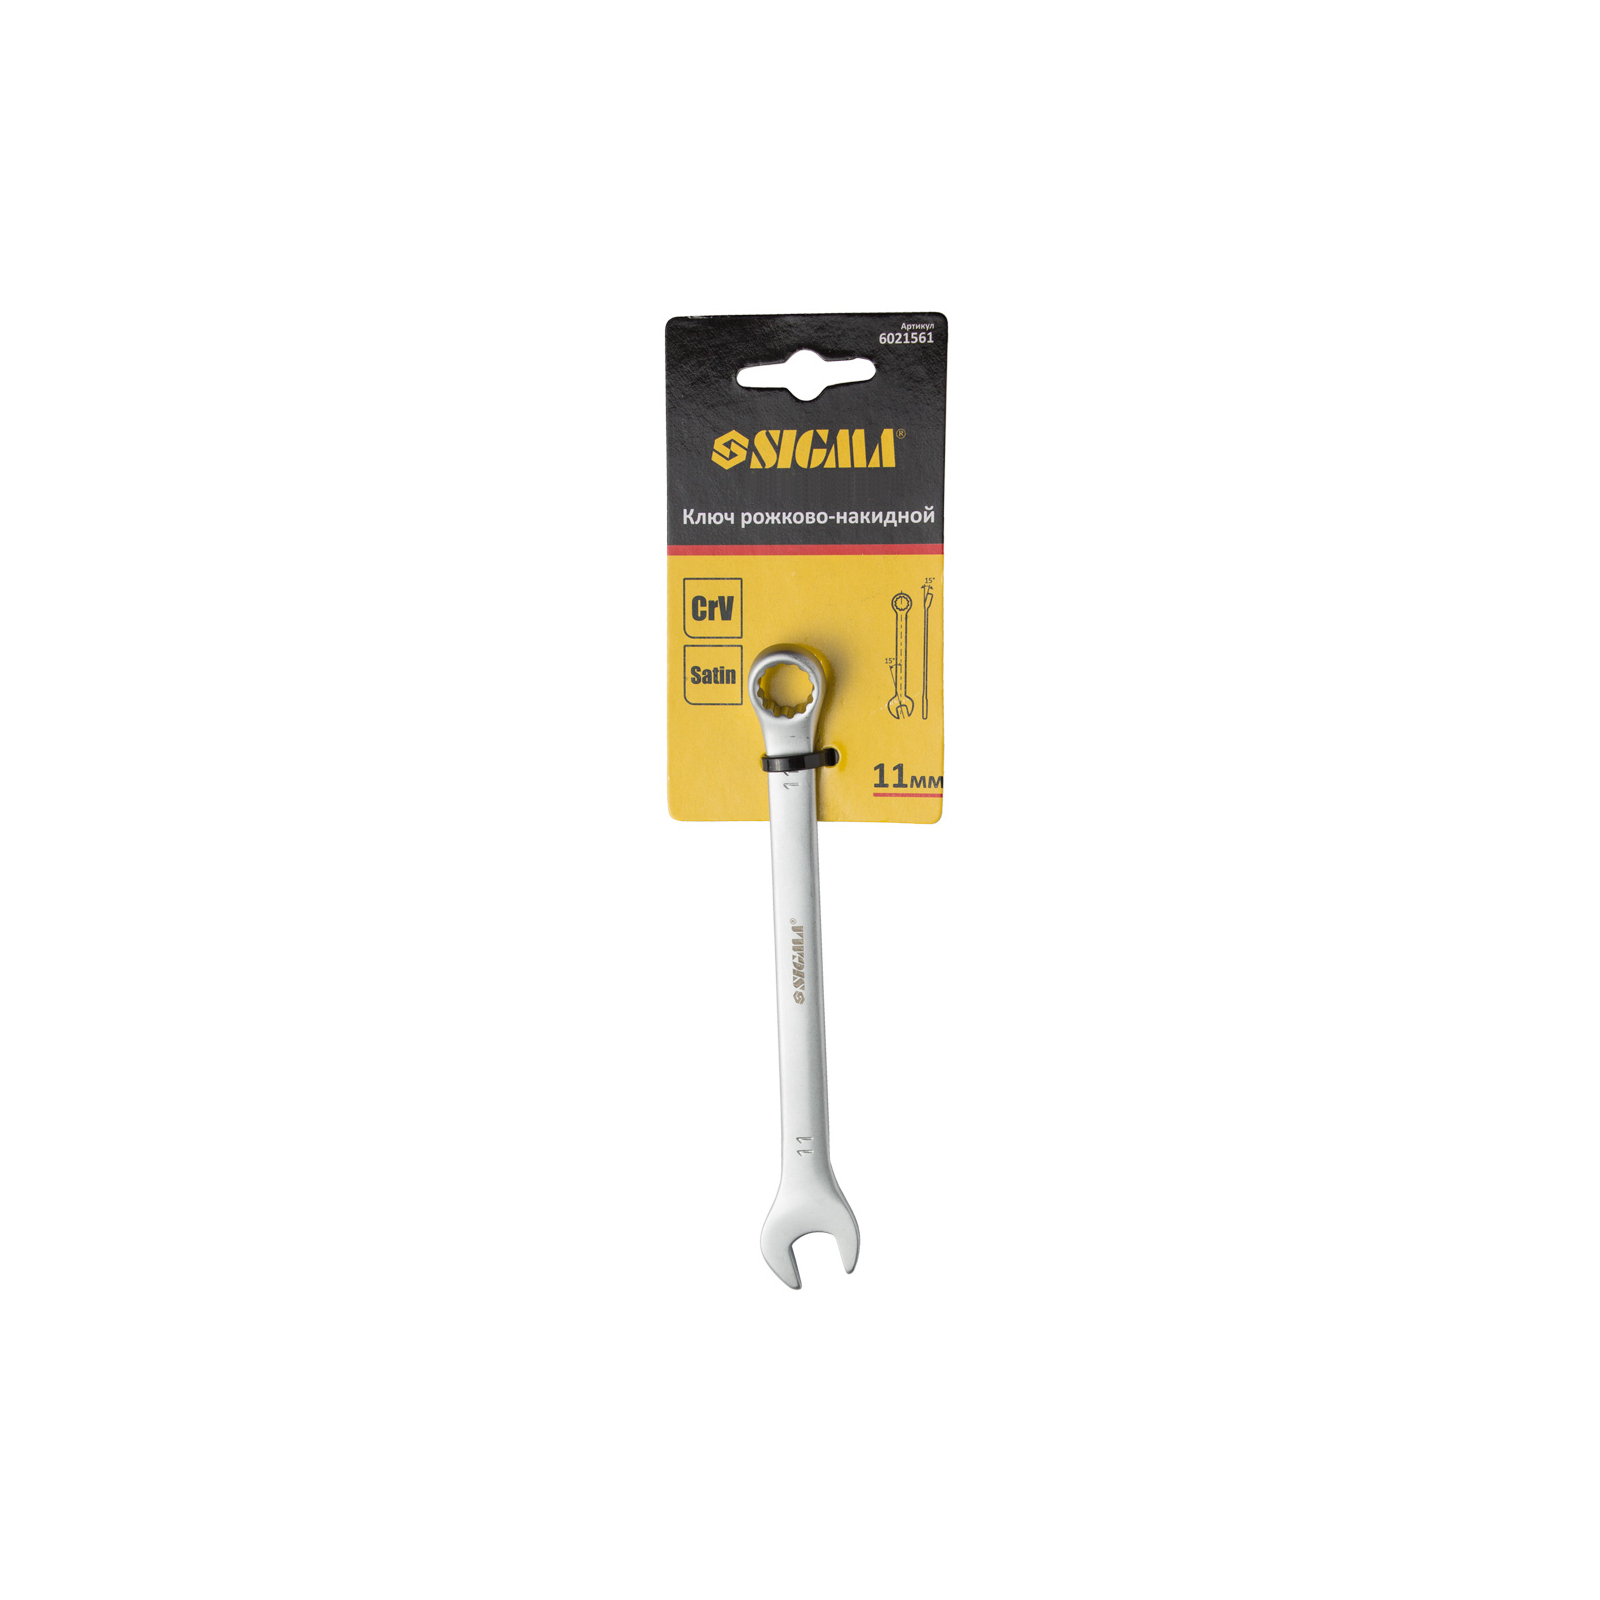 Ключ Sigma рожково-накидной 36мм CrV satine с подвесом (6021801) изображение 4